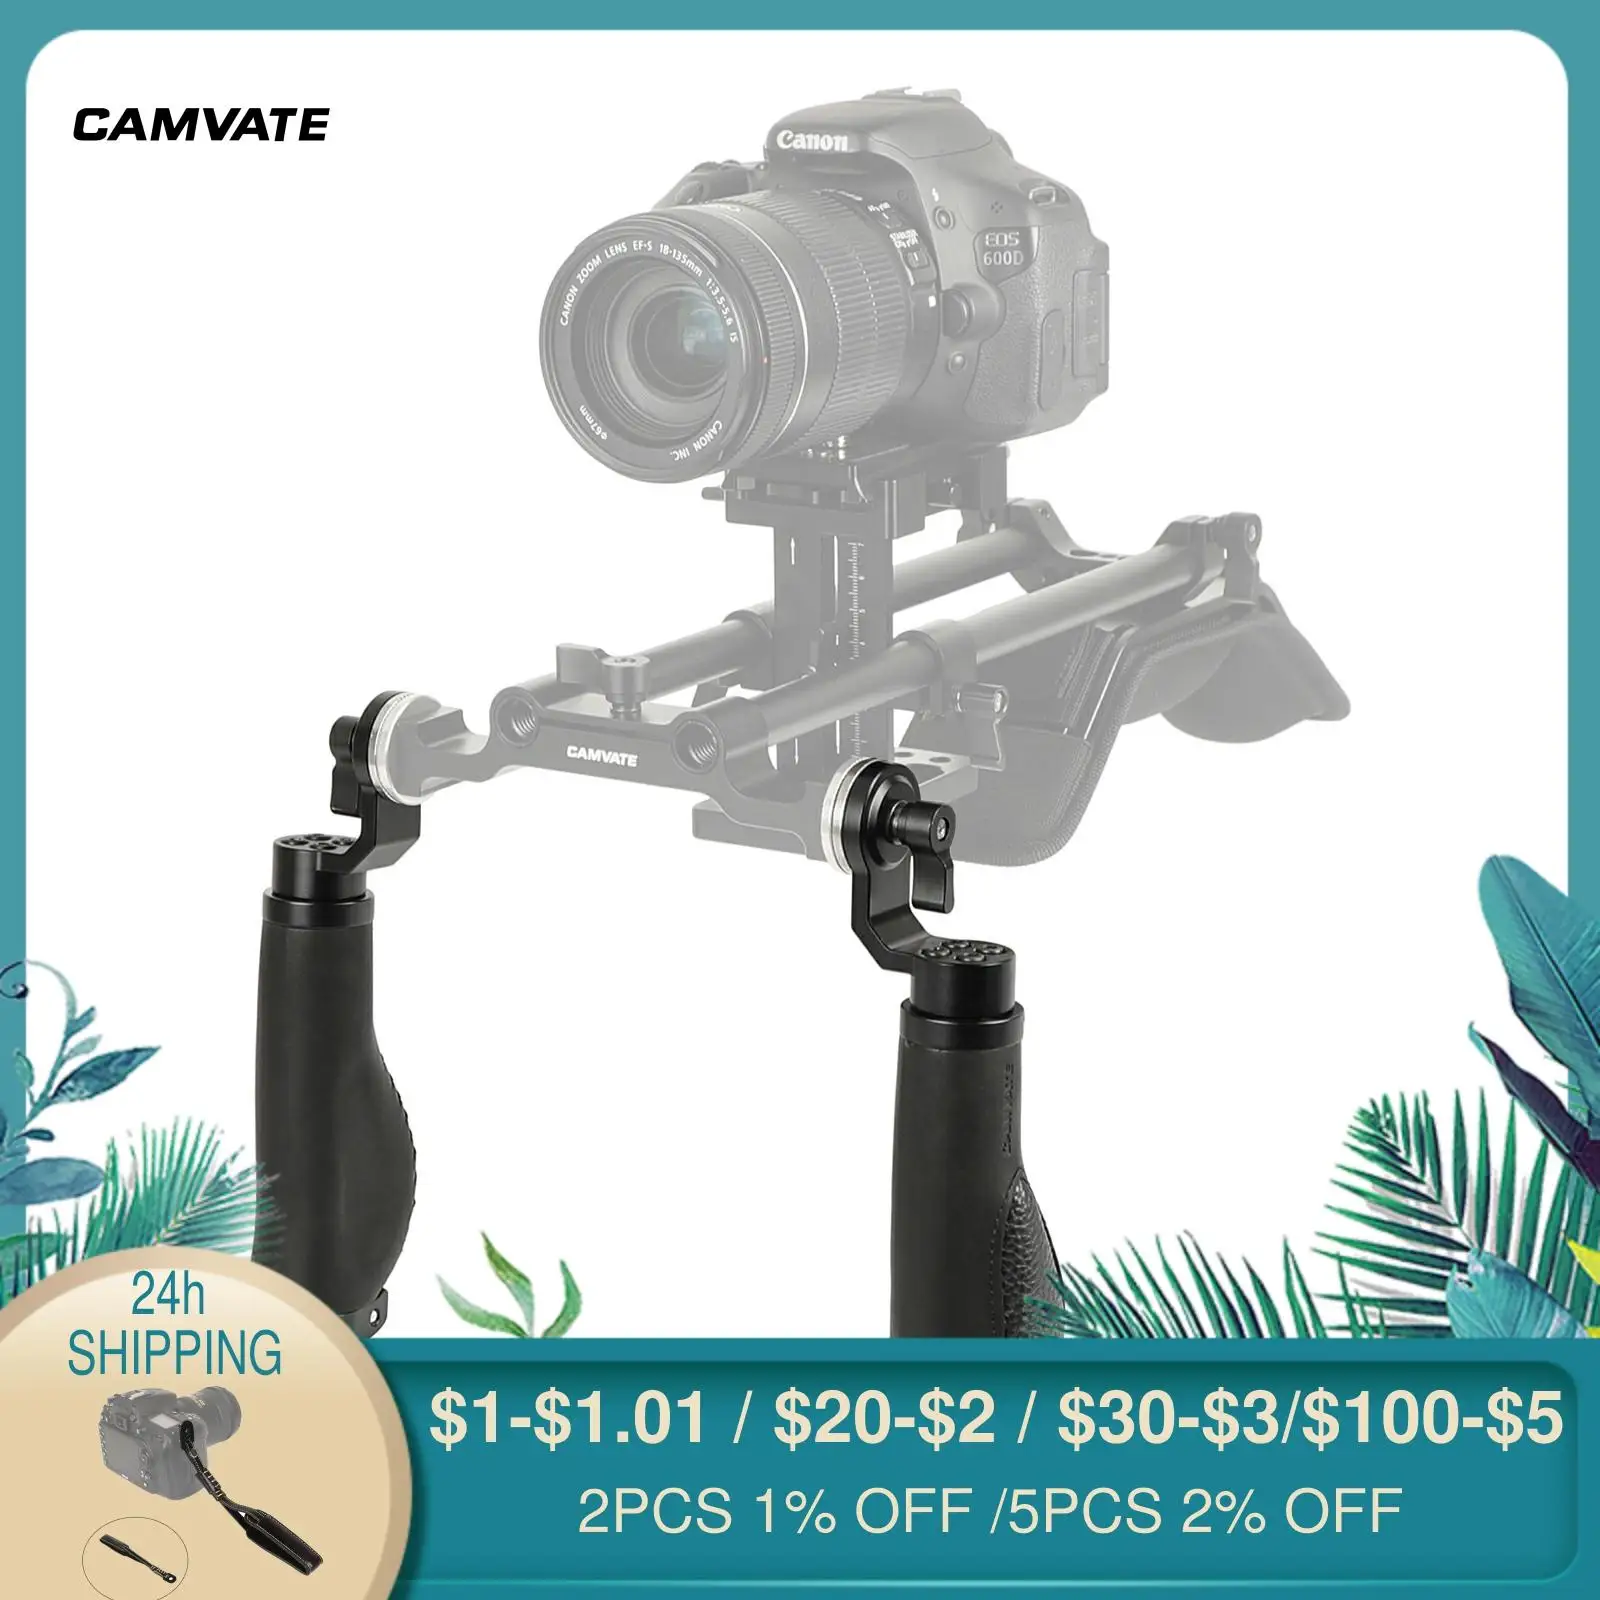 

CAMVATE 2 шт. кожаные ручки для камеры со стандартной розеткой ARRI (Резьба M6) для DSLR камеры плечевой Риг поддерживающая система